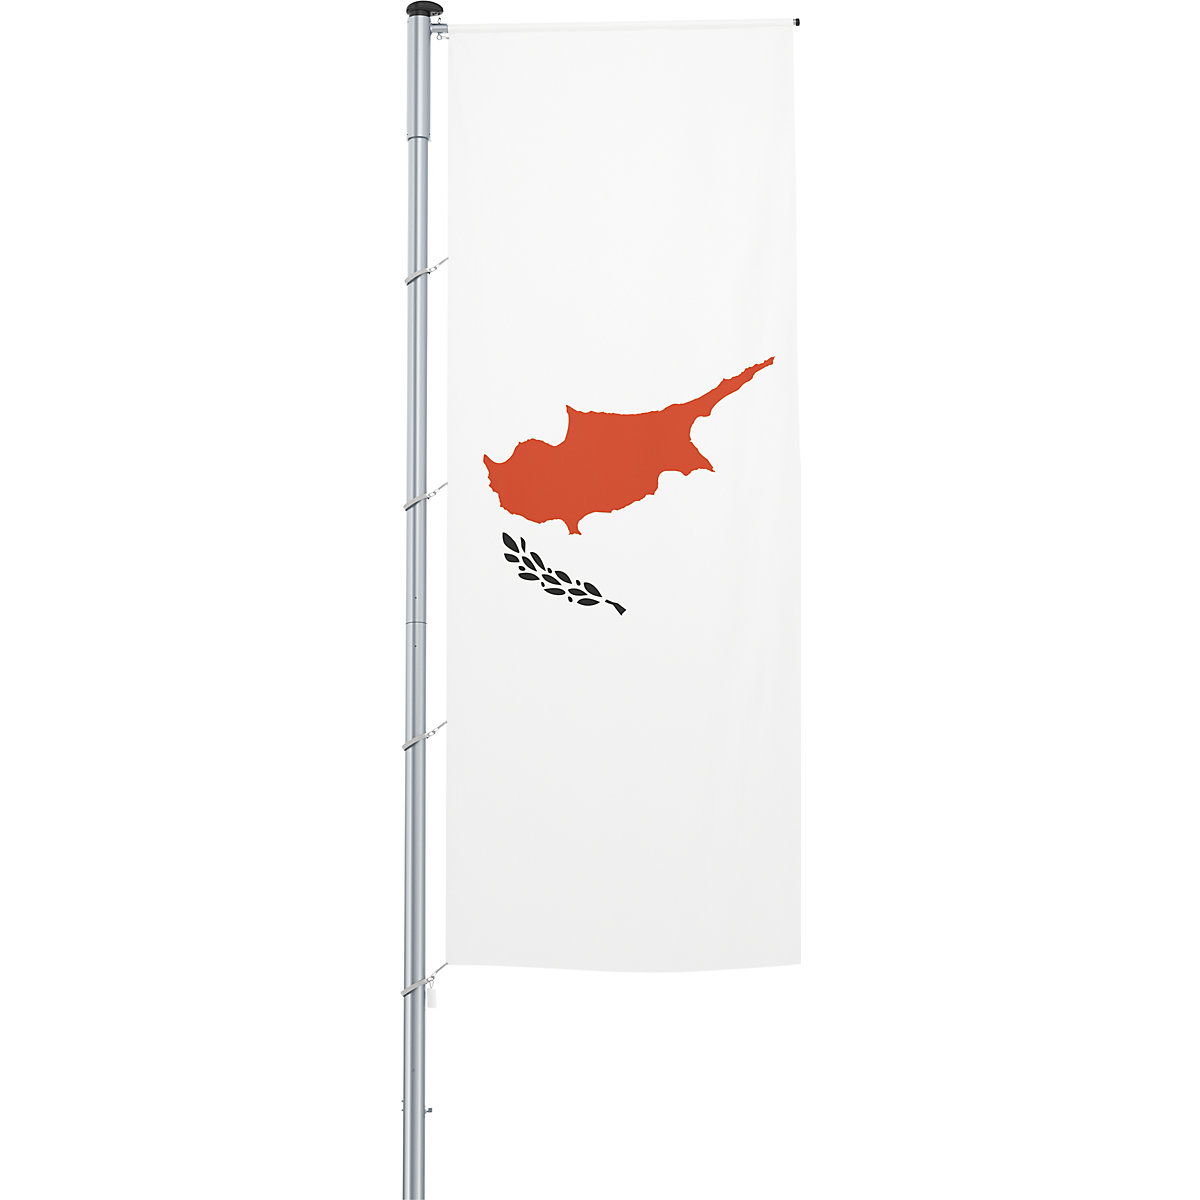 Zastava s prečko/državna zastava – Mannus, format 1,2 x 3 m, Ciper-5